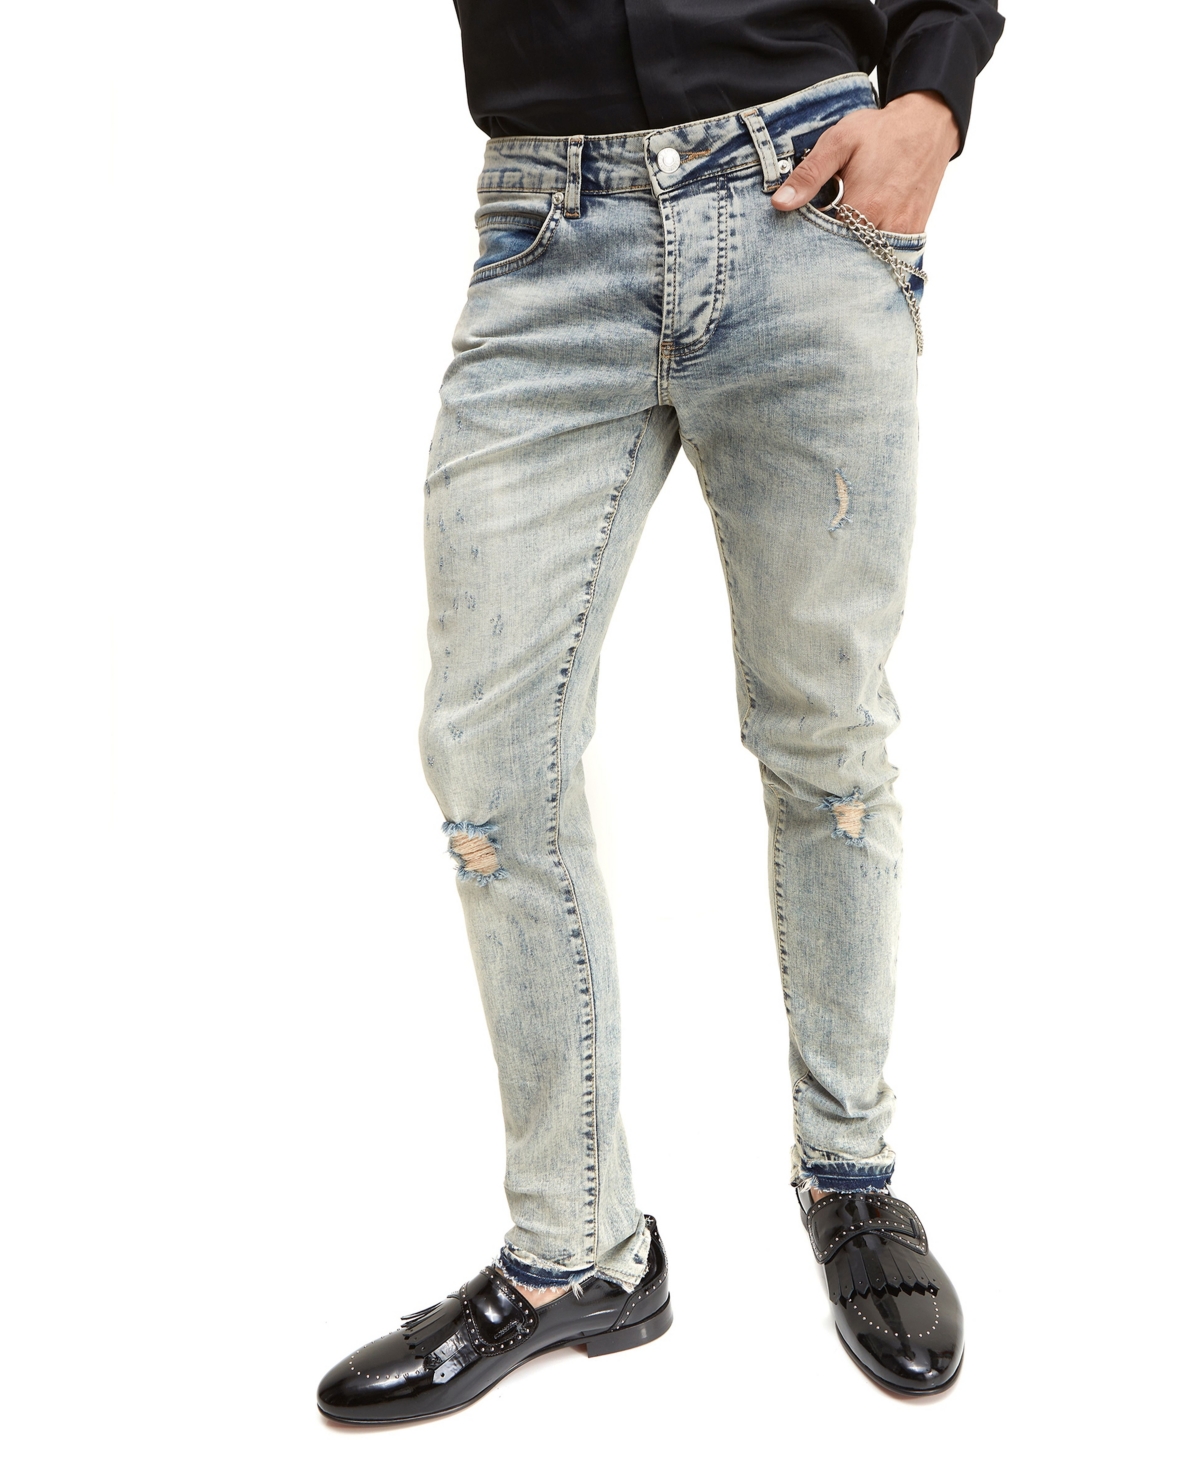 Men's Modern Grunge Skinny Fit Denim Jeans - Blue